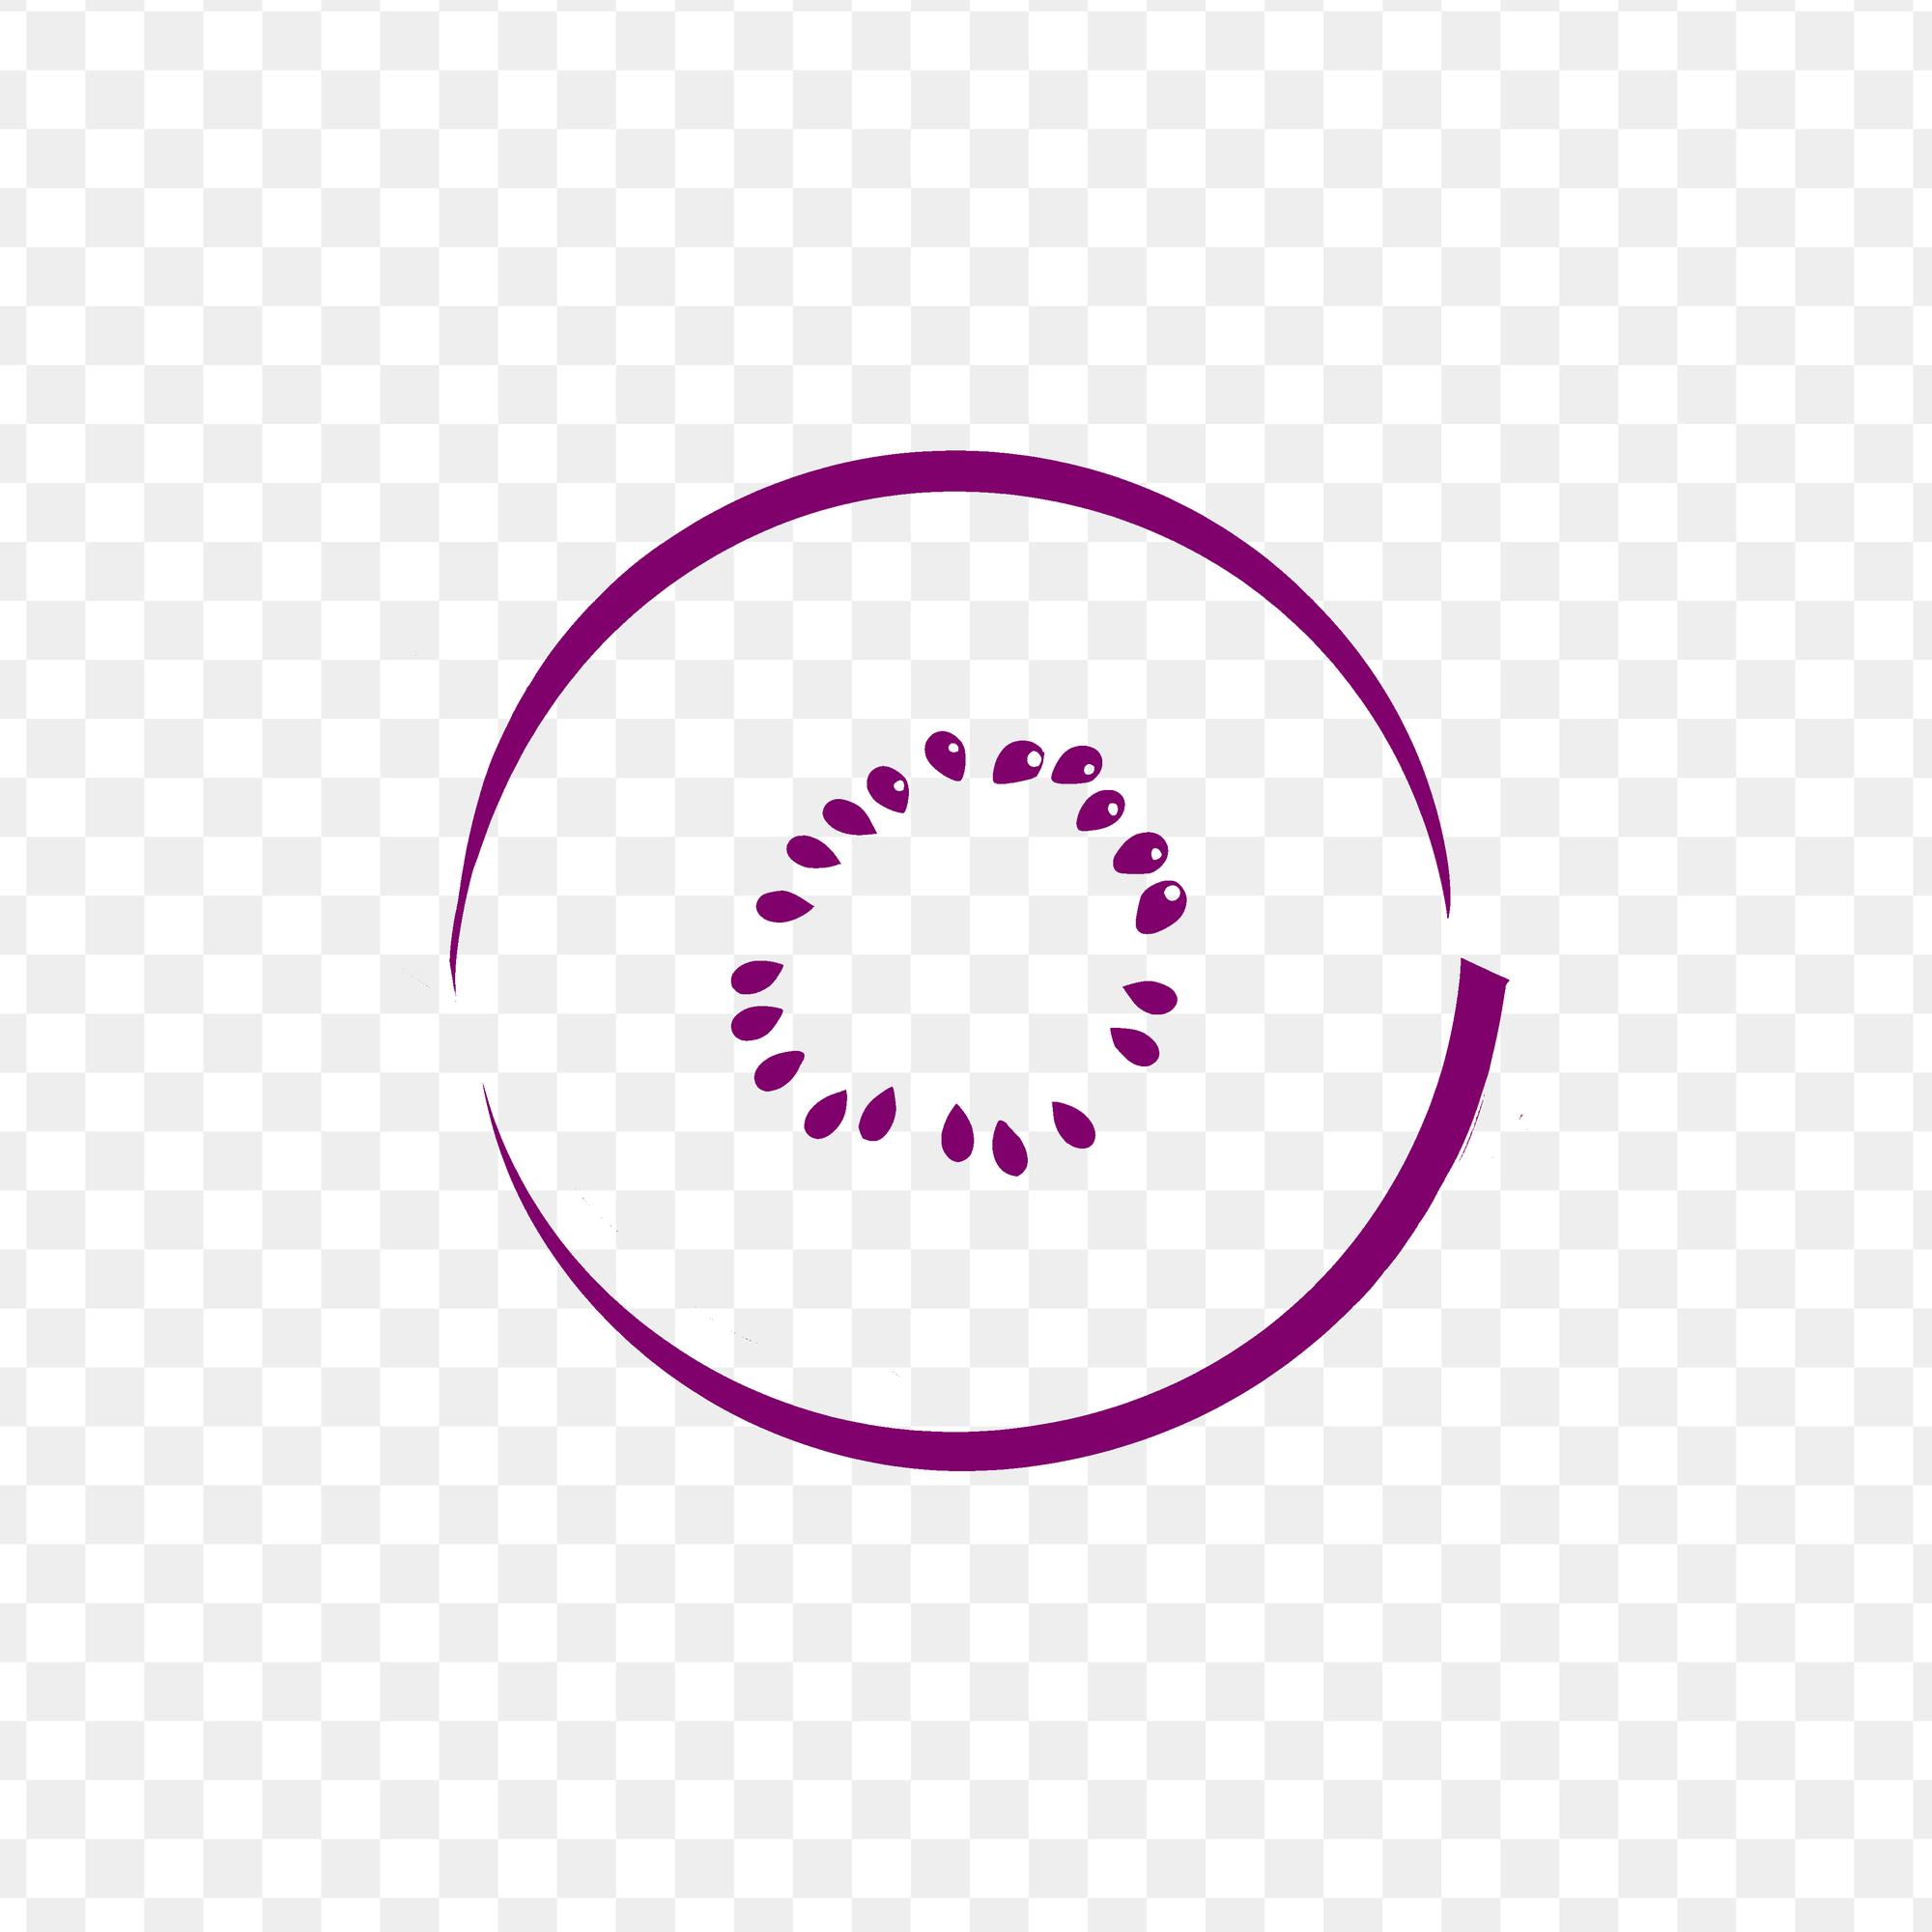 Un círculo de puntos está dibujado sobre un fondo blanco